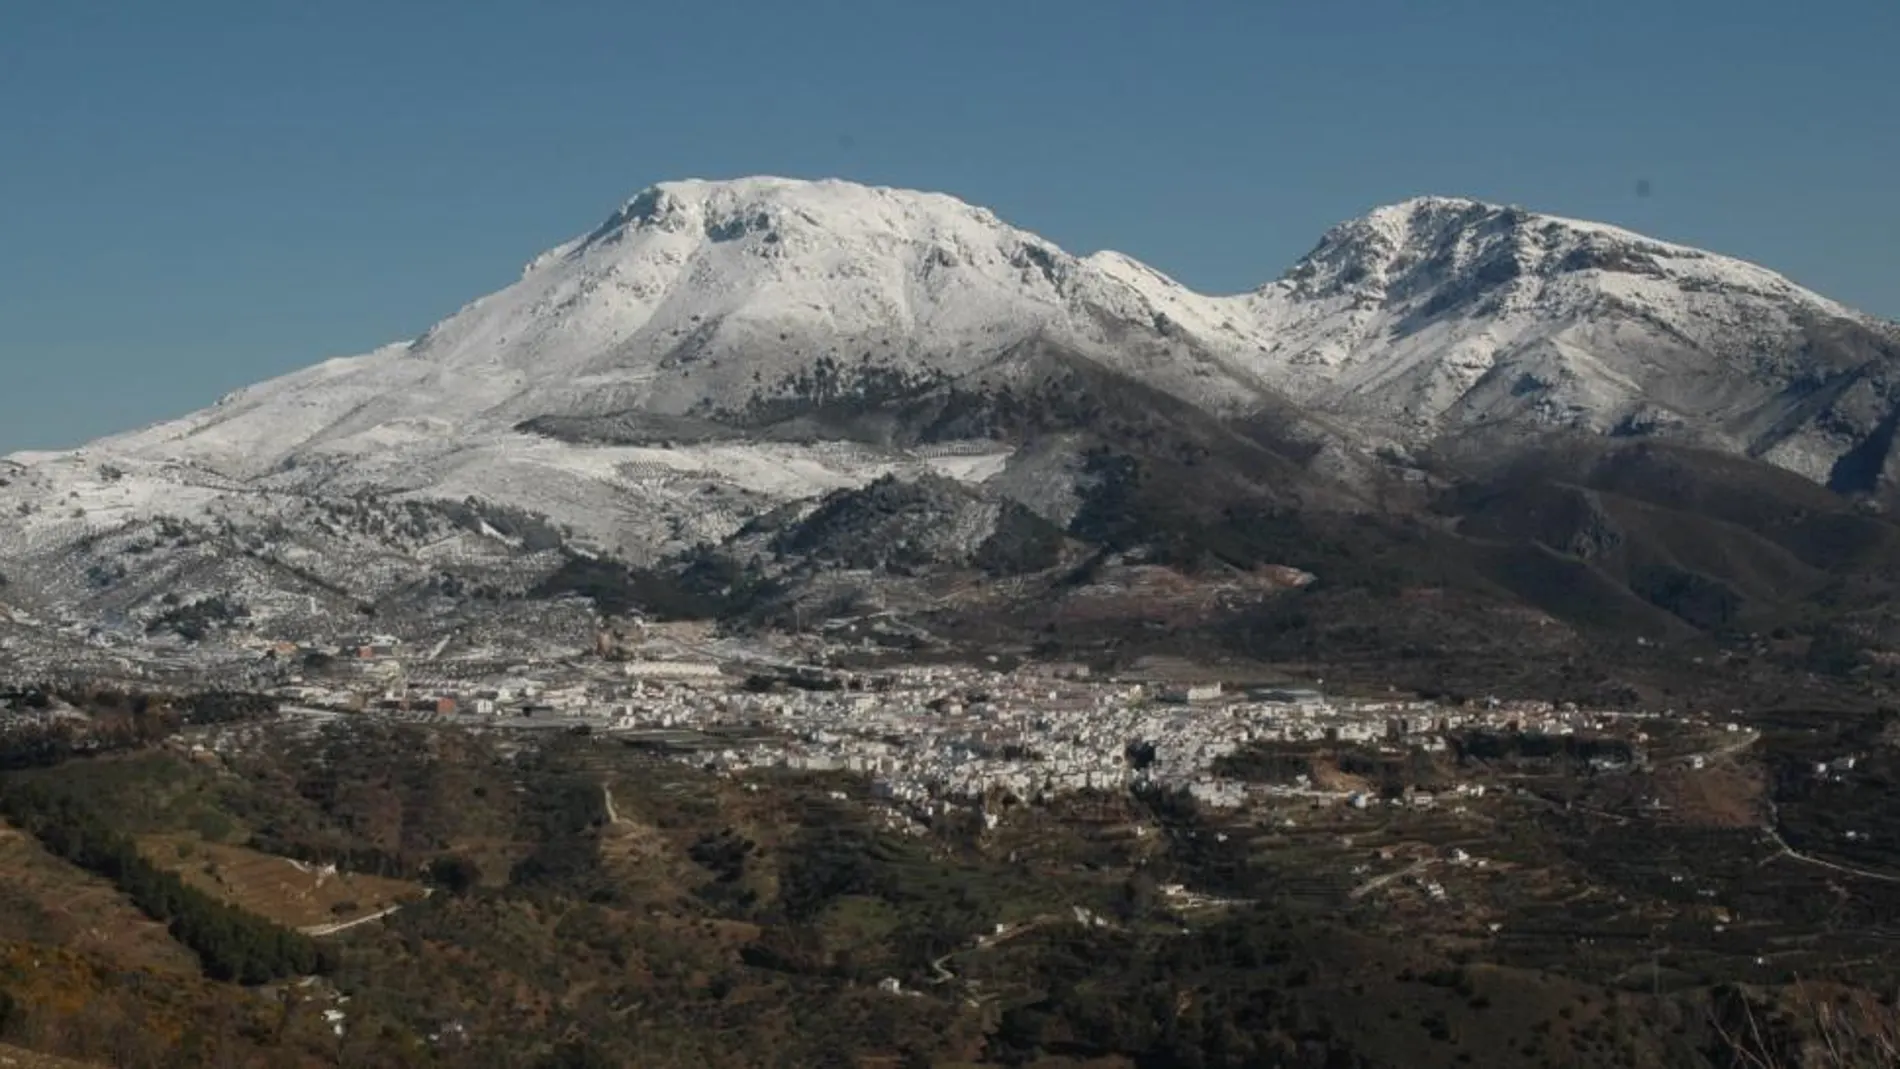 Vista de la Sierra de las Nieves. La zona de protección incluye los términos de municipios como Ronda o Benahavís